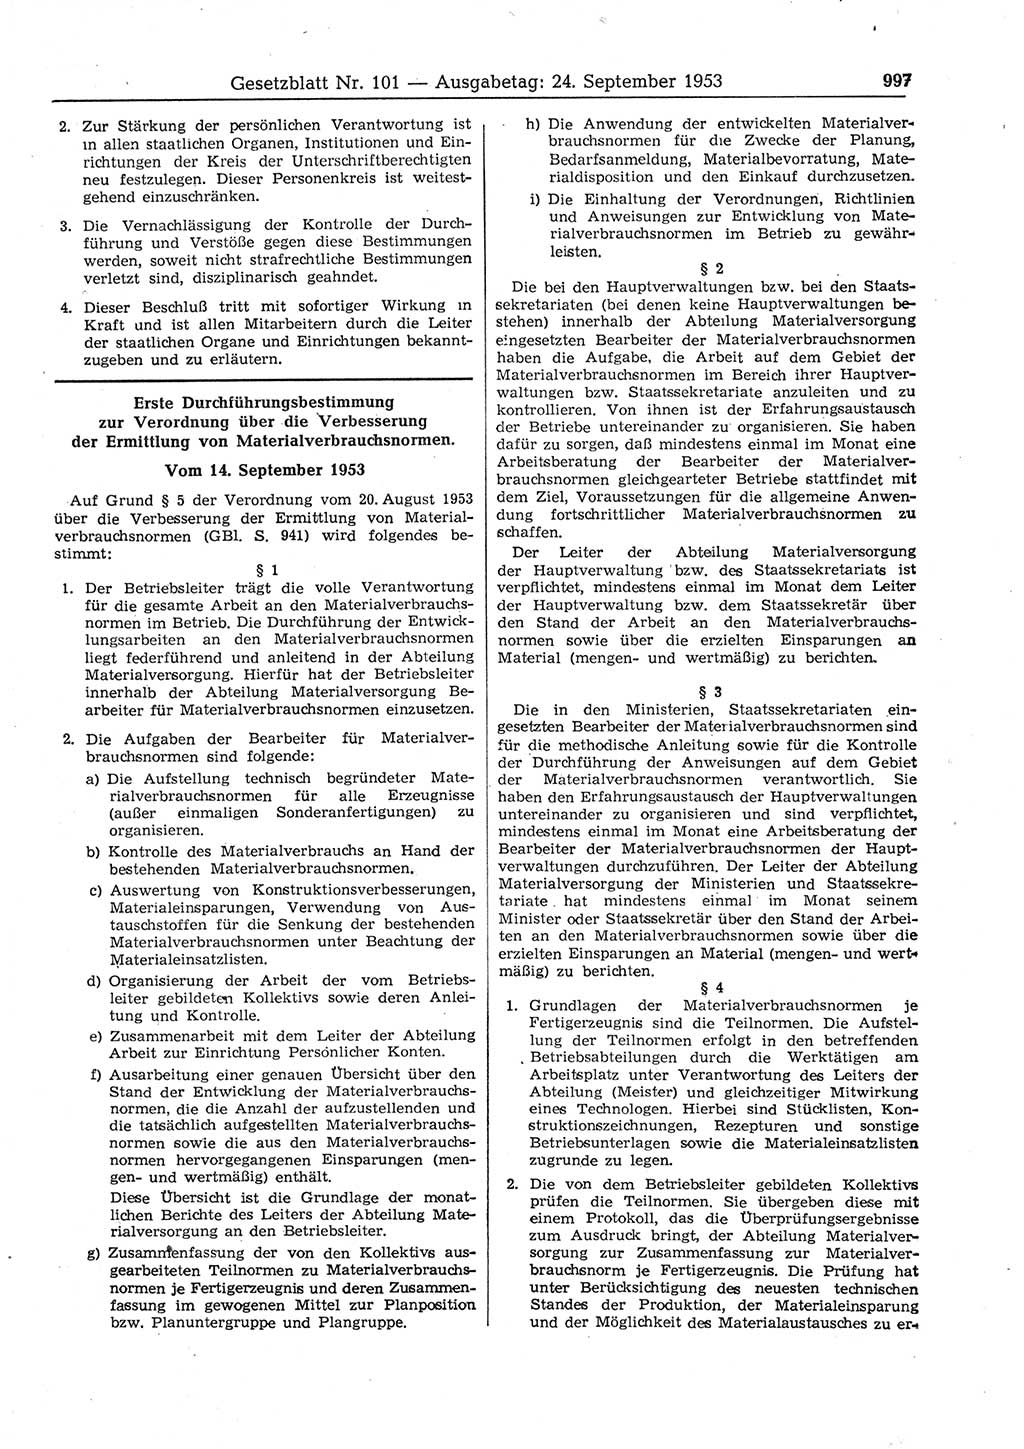 Gesetzblatt (GBl.) der Deutschen Demokratischen Republik (DDR) 1953, Seite 997 (GBl. DDR 1953, S. 997)